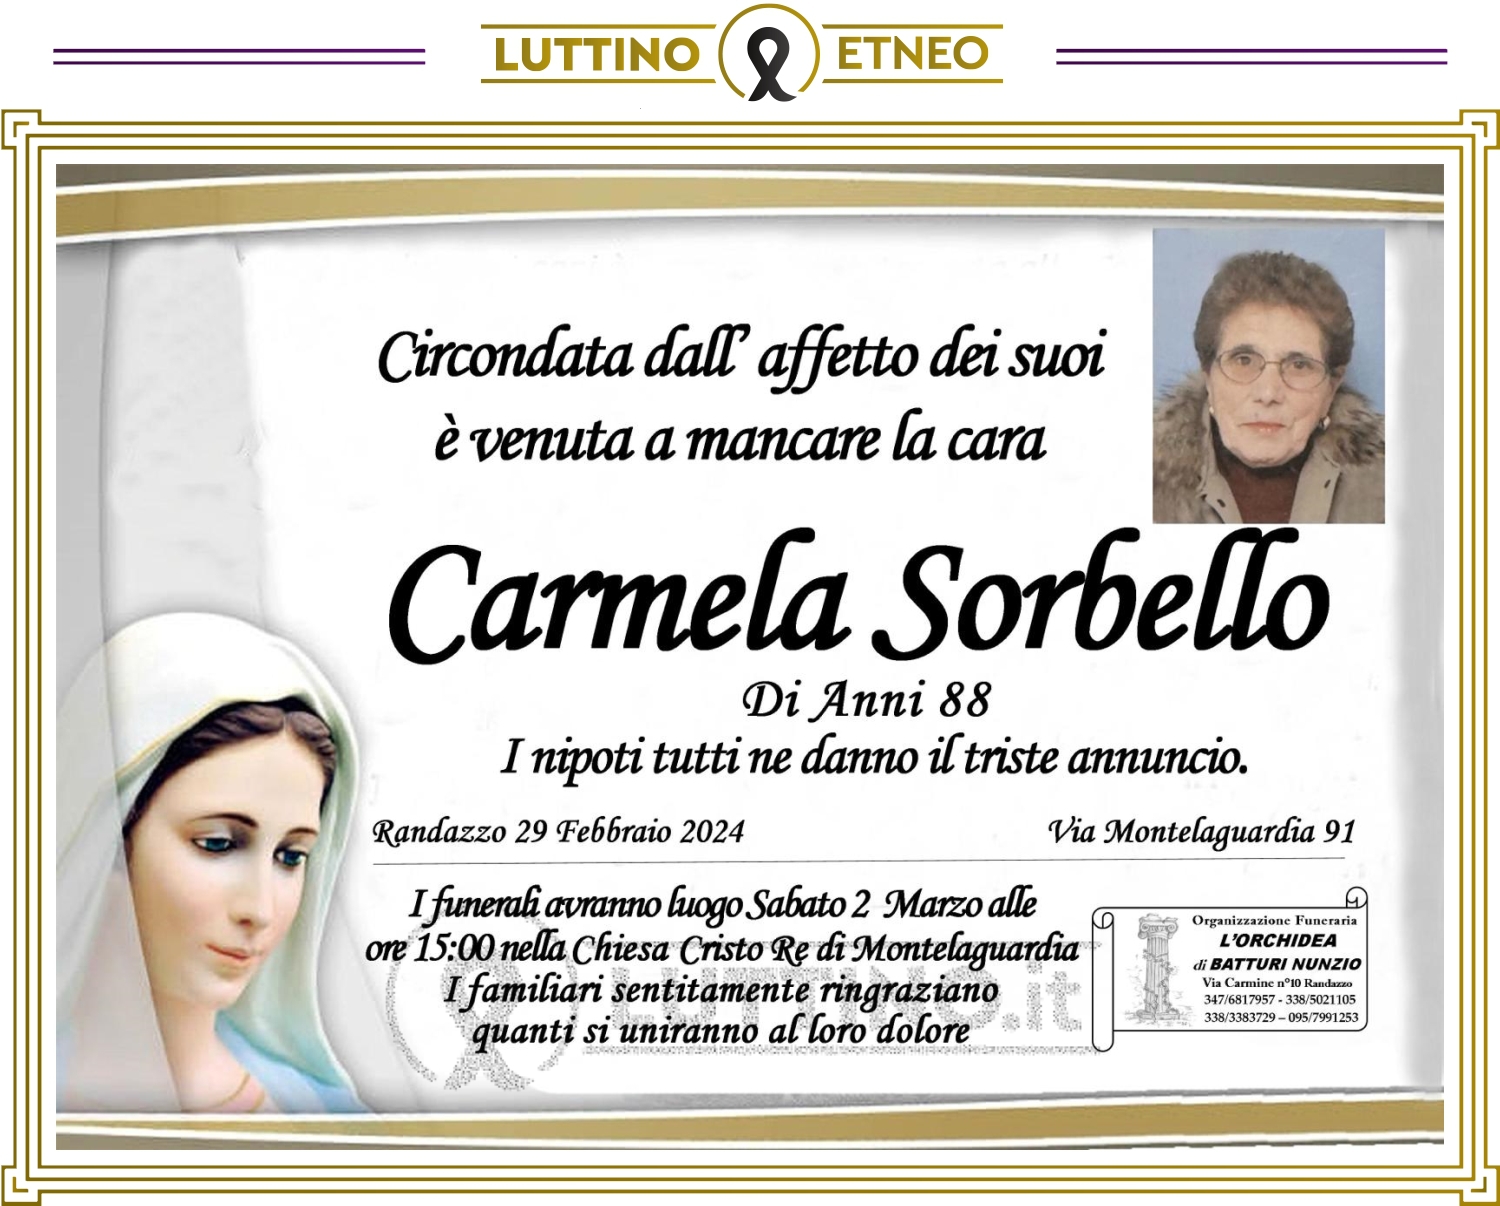 Carmela Sorbello